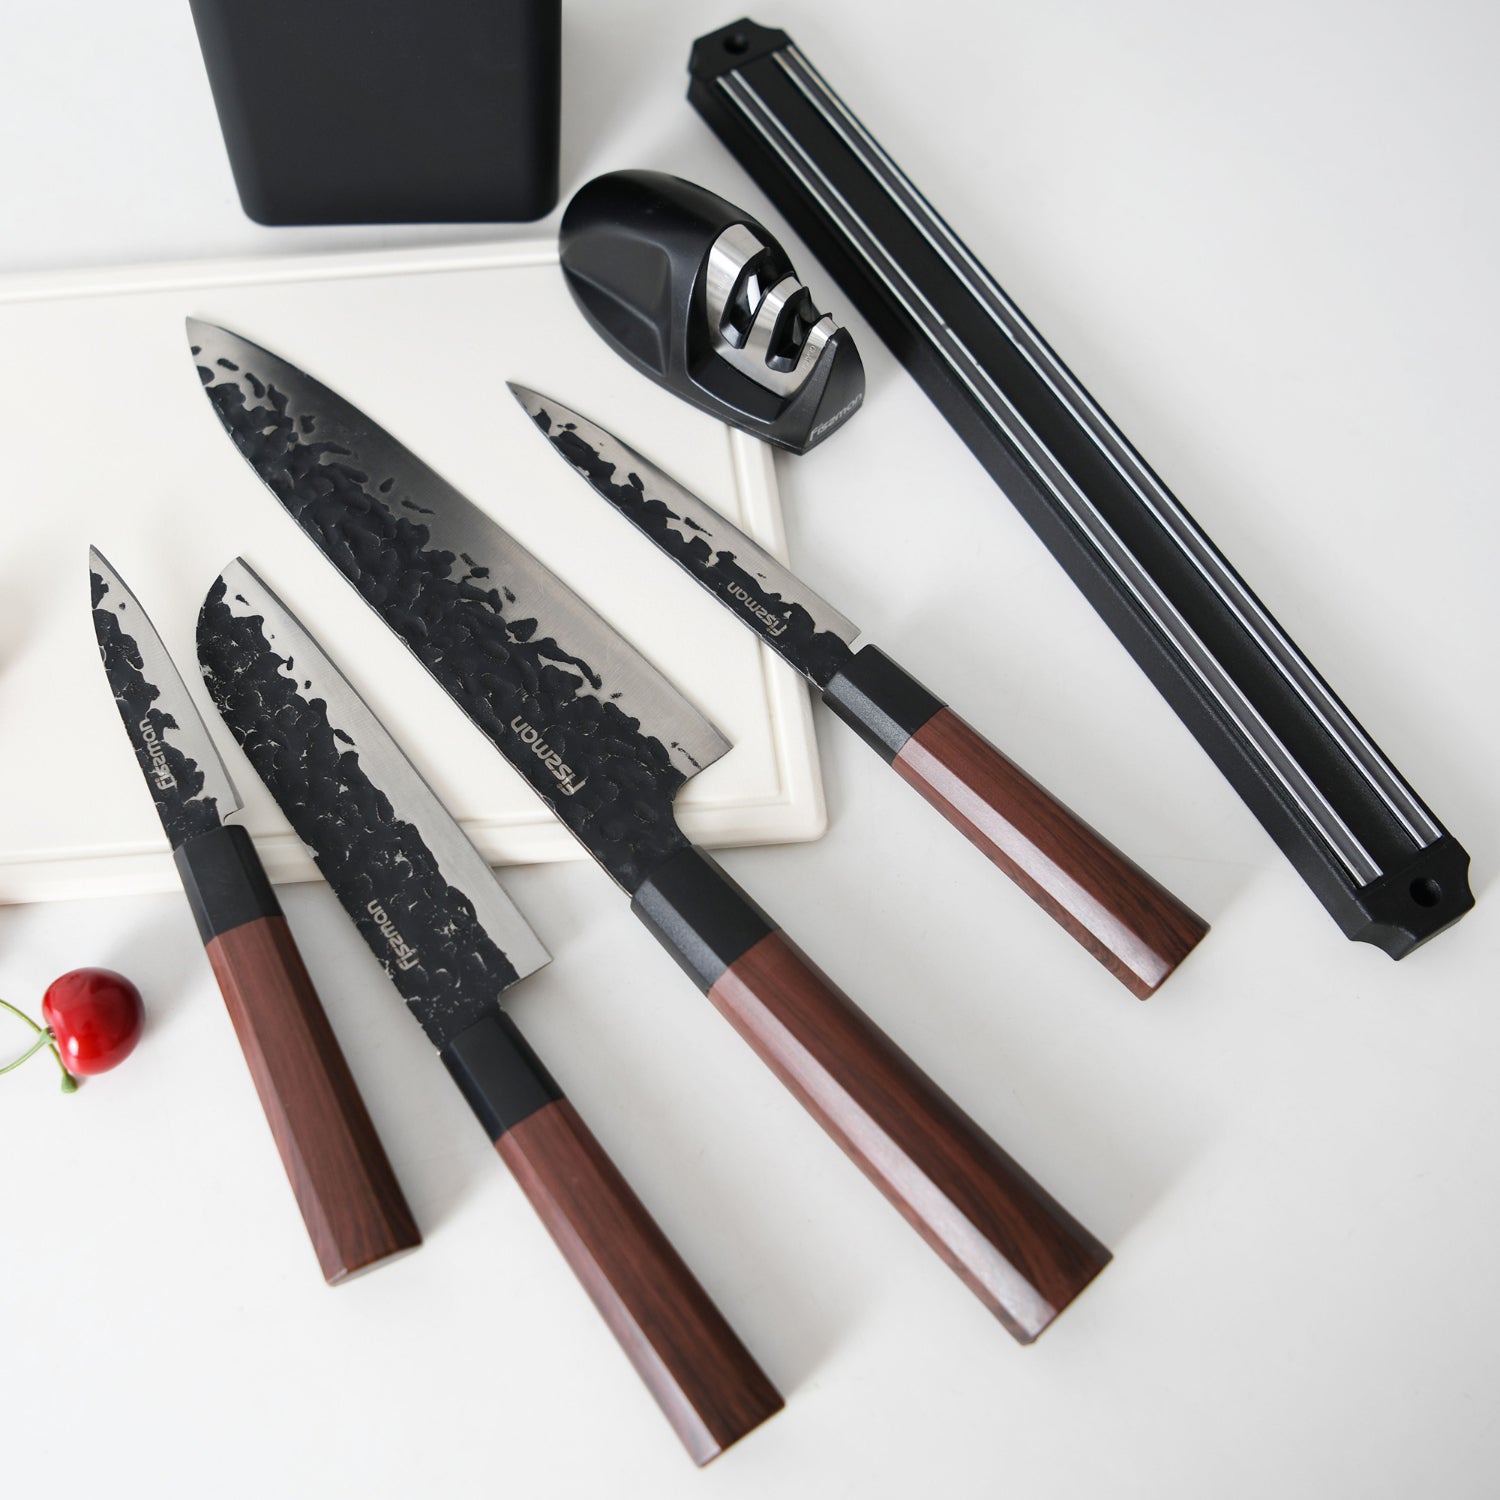 مجموعة سكاكين Fissman المكونة من 6 قطع ، سلسلة Kendo X30Cr13 Steel ، سكين الشيف مقاس 8 بوصات ، 5 "5 فائدة ، سكين إقران 3.5 بوصة ، قضيب مغناطيسي ، ومبراة